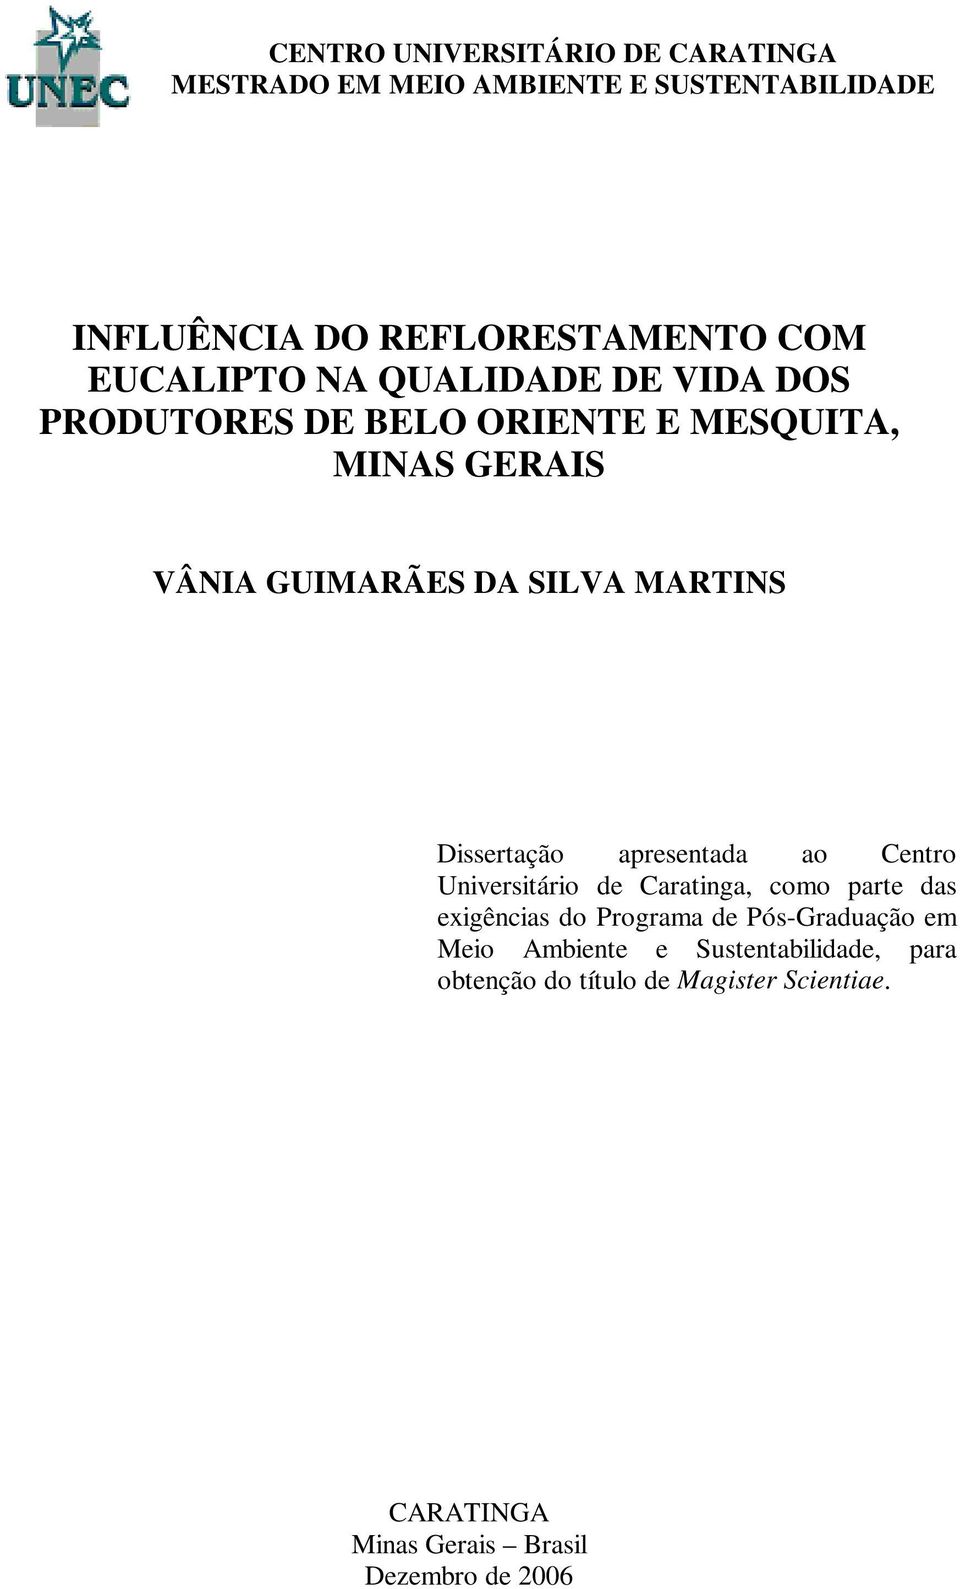 Dissertação apresentada ao Centro Universitário de Caratinga, como parte das exigências do Programa de Pós-Graduação em